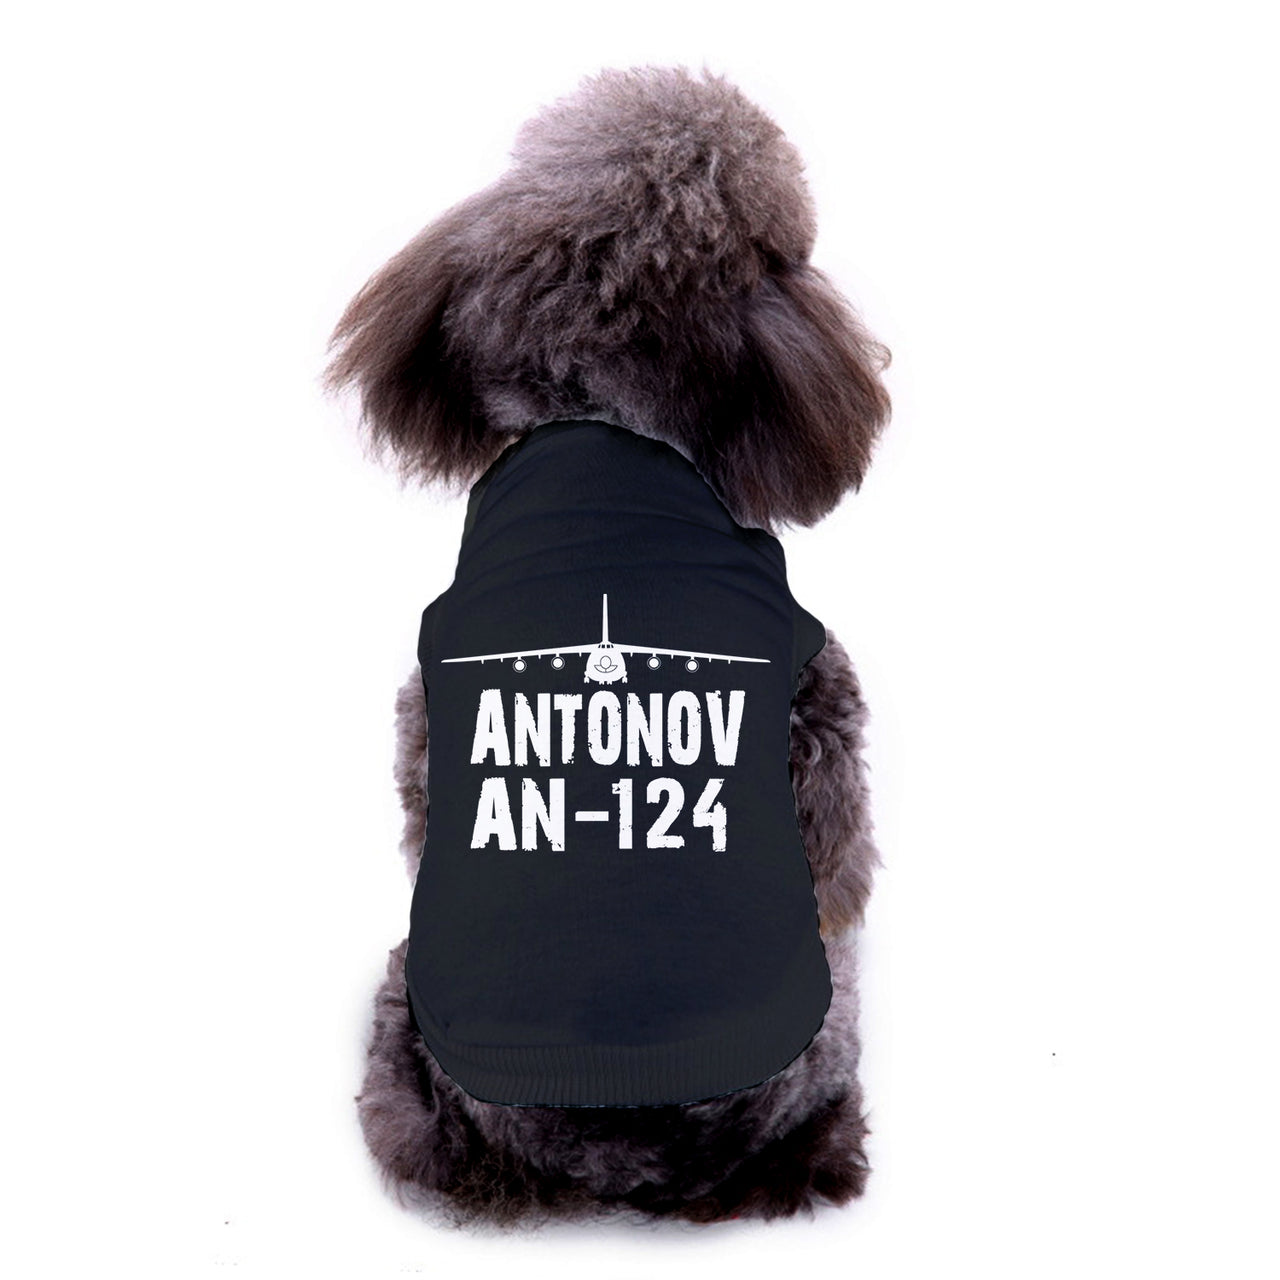 Antonov AN-124 & Plane Designed Dog Pet Vests